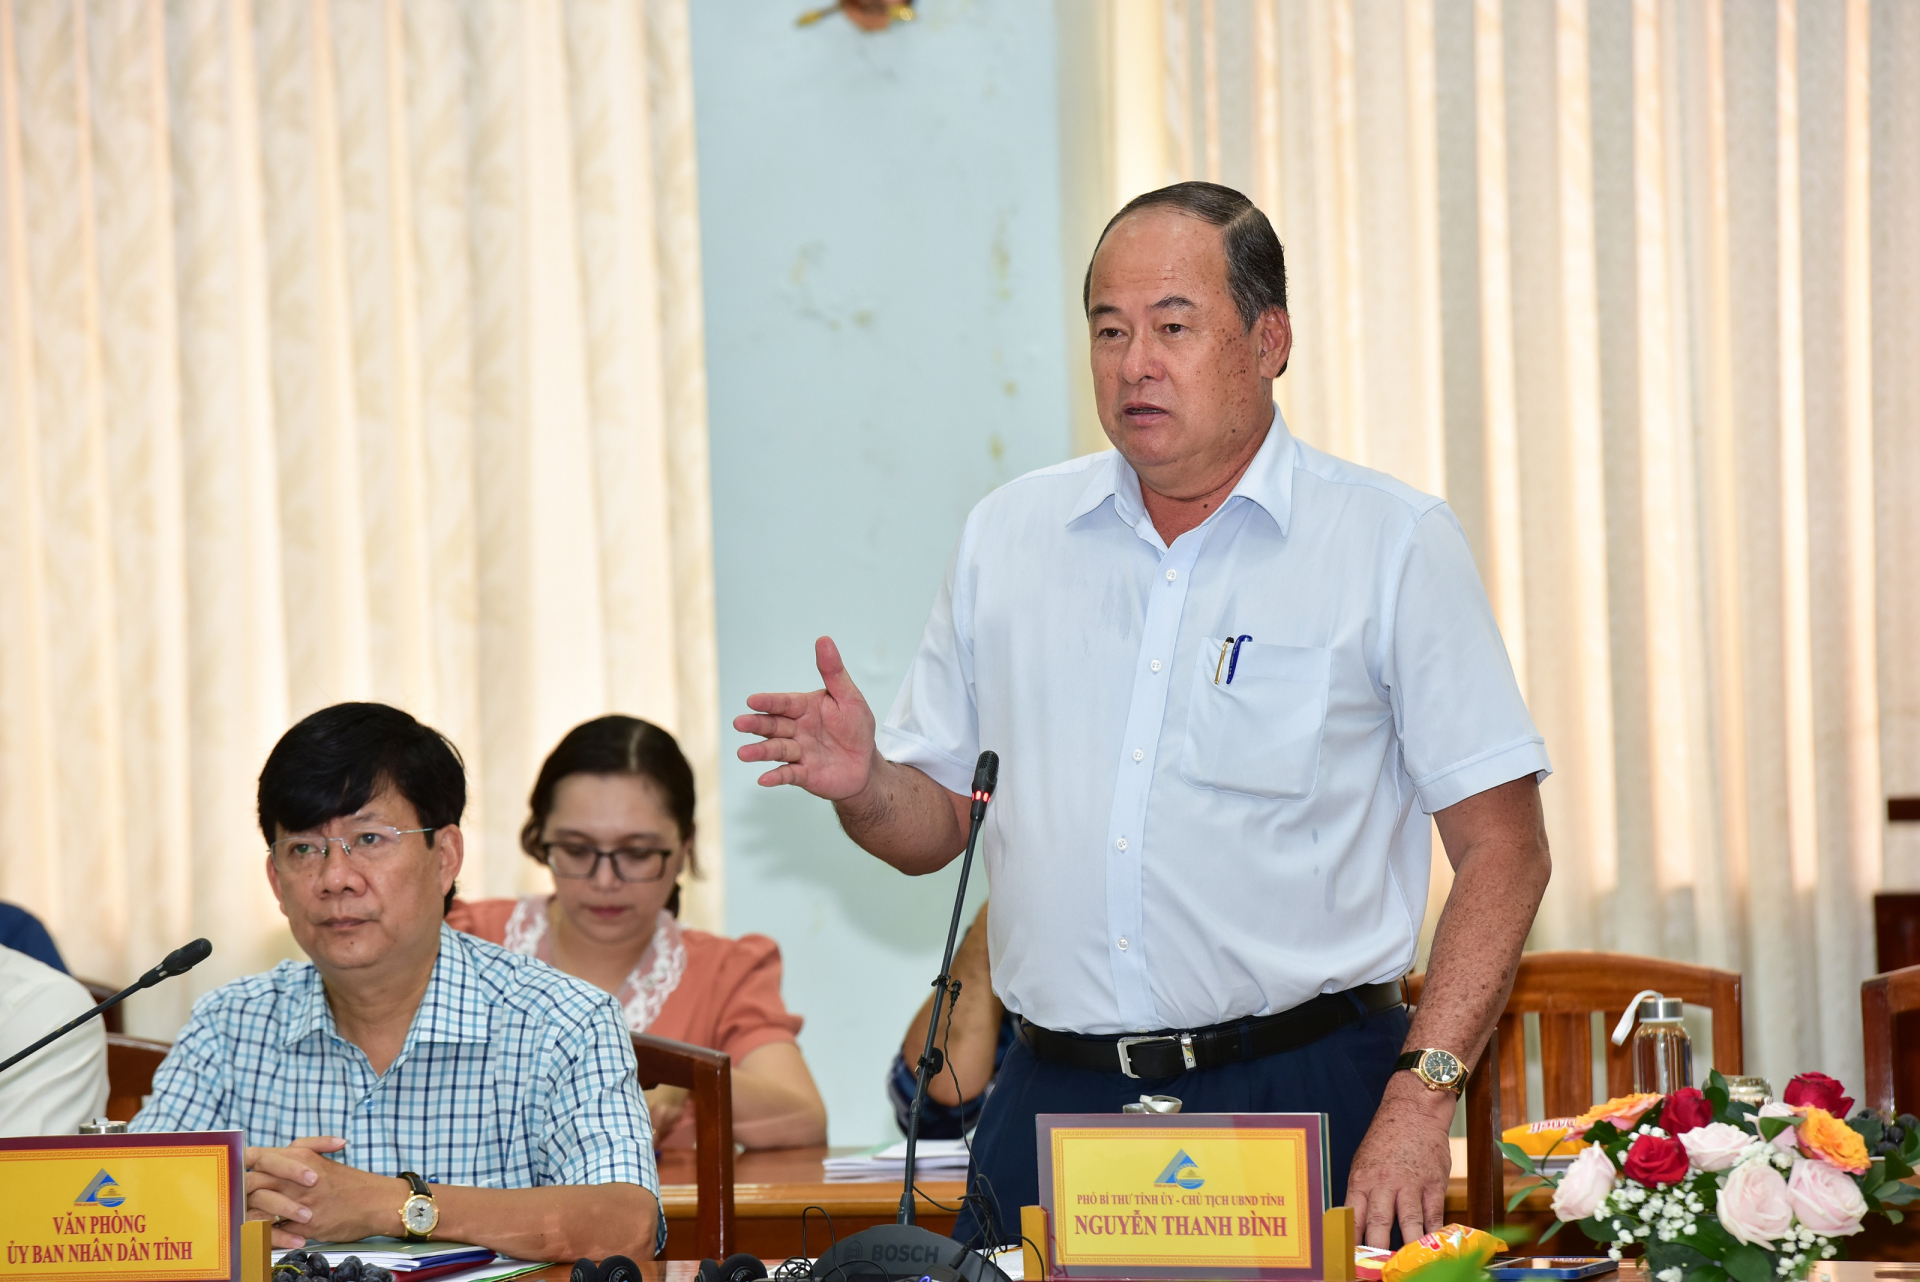 nh 3 Phát biểu tại cuộc họp, Ông Nguyễn Thanh Bình - Phó Bí thư Tỉnh ủy, Chủ tịch UBND tỉnh An Giang đánh giá cao đề án của NovaGroup